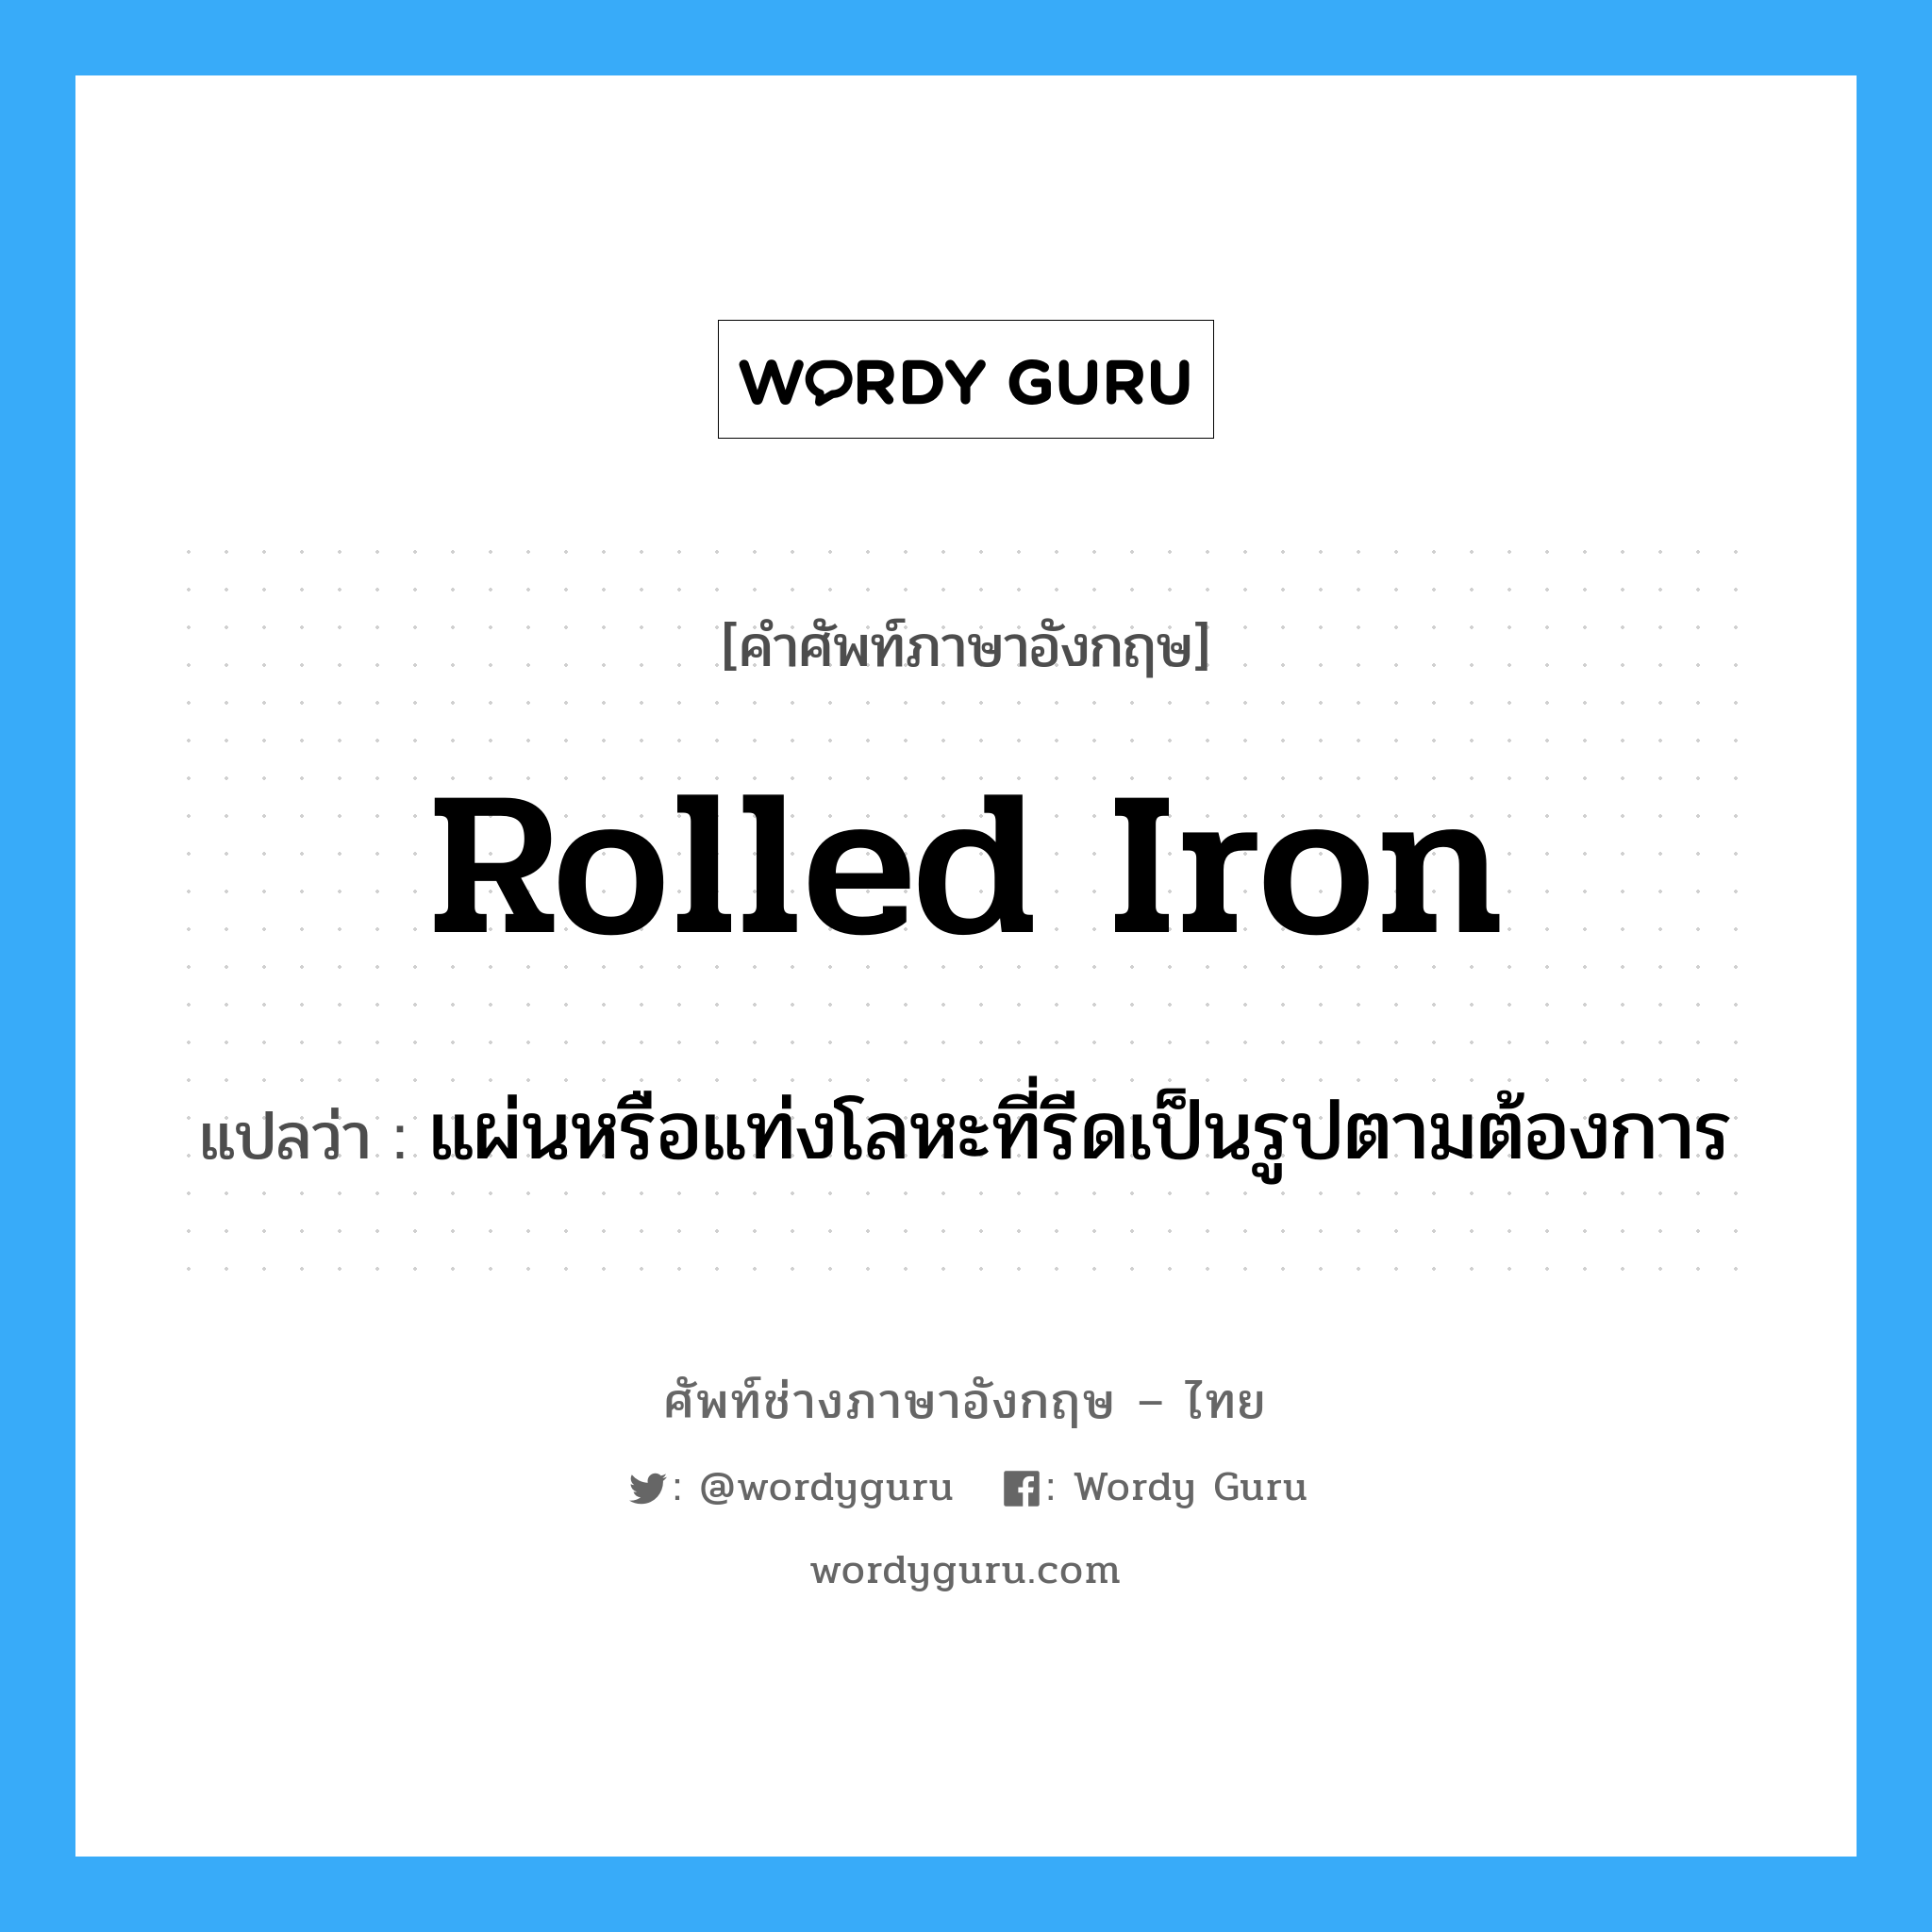 rolled iron แปลว่า?, คำศัพท์ช่างภาษาอังกฤษ - ไทย rolled iron คำศัพท์ภาษาอังกฤษ rolled iron แปลว่า แผ่นหรือแท่งโลหะที่รีดเป็นรูปตามต้องการ